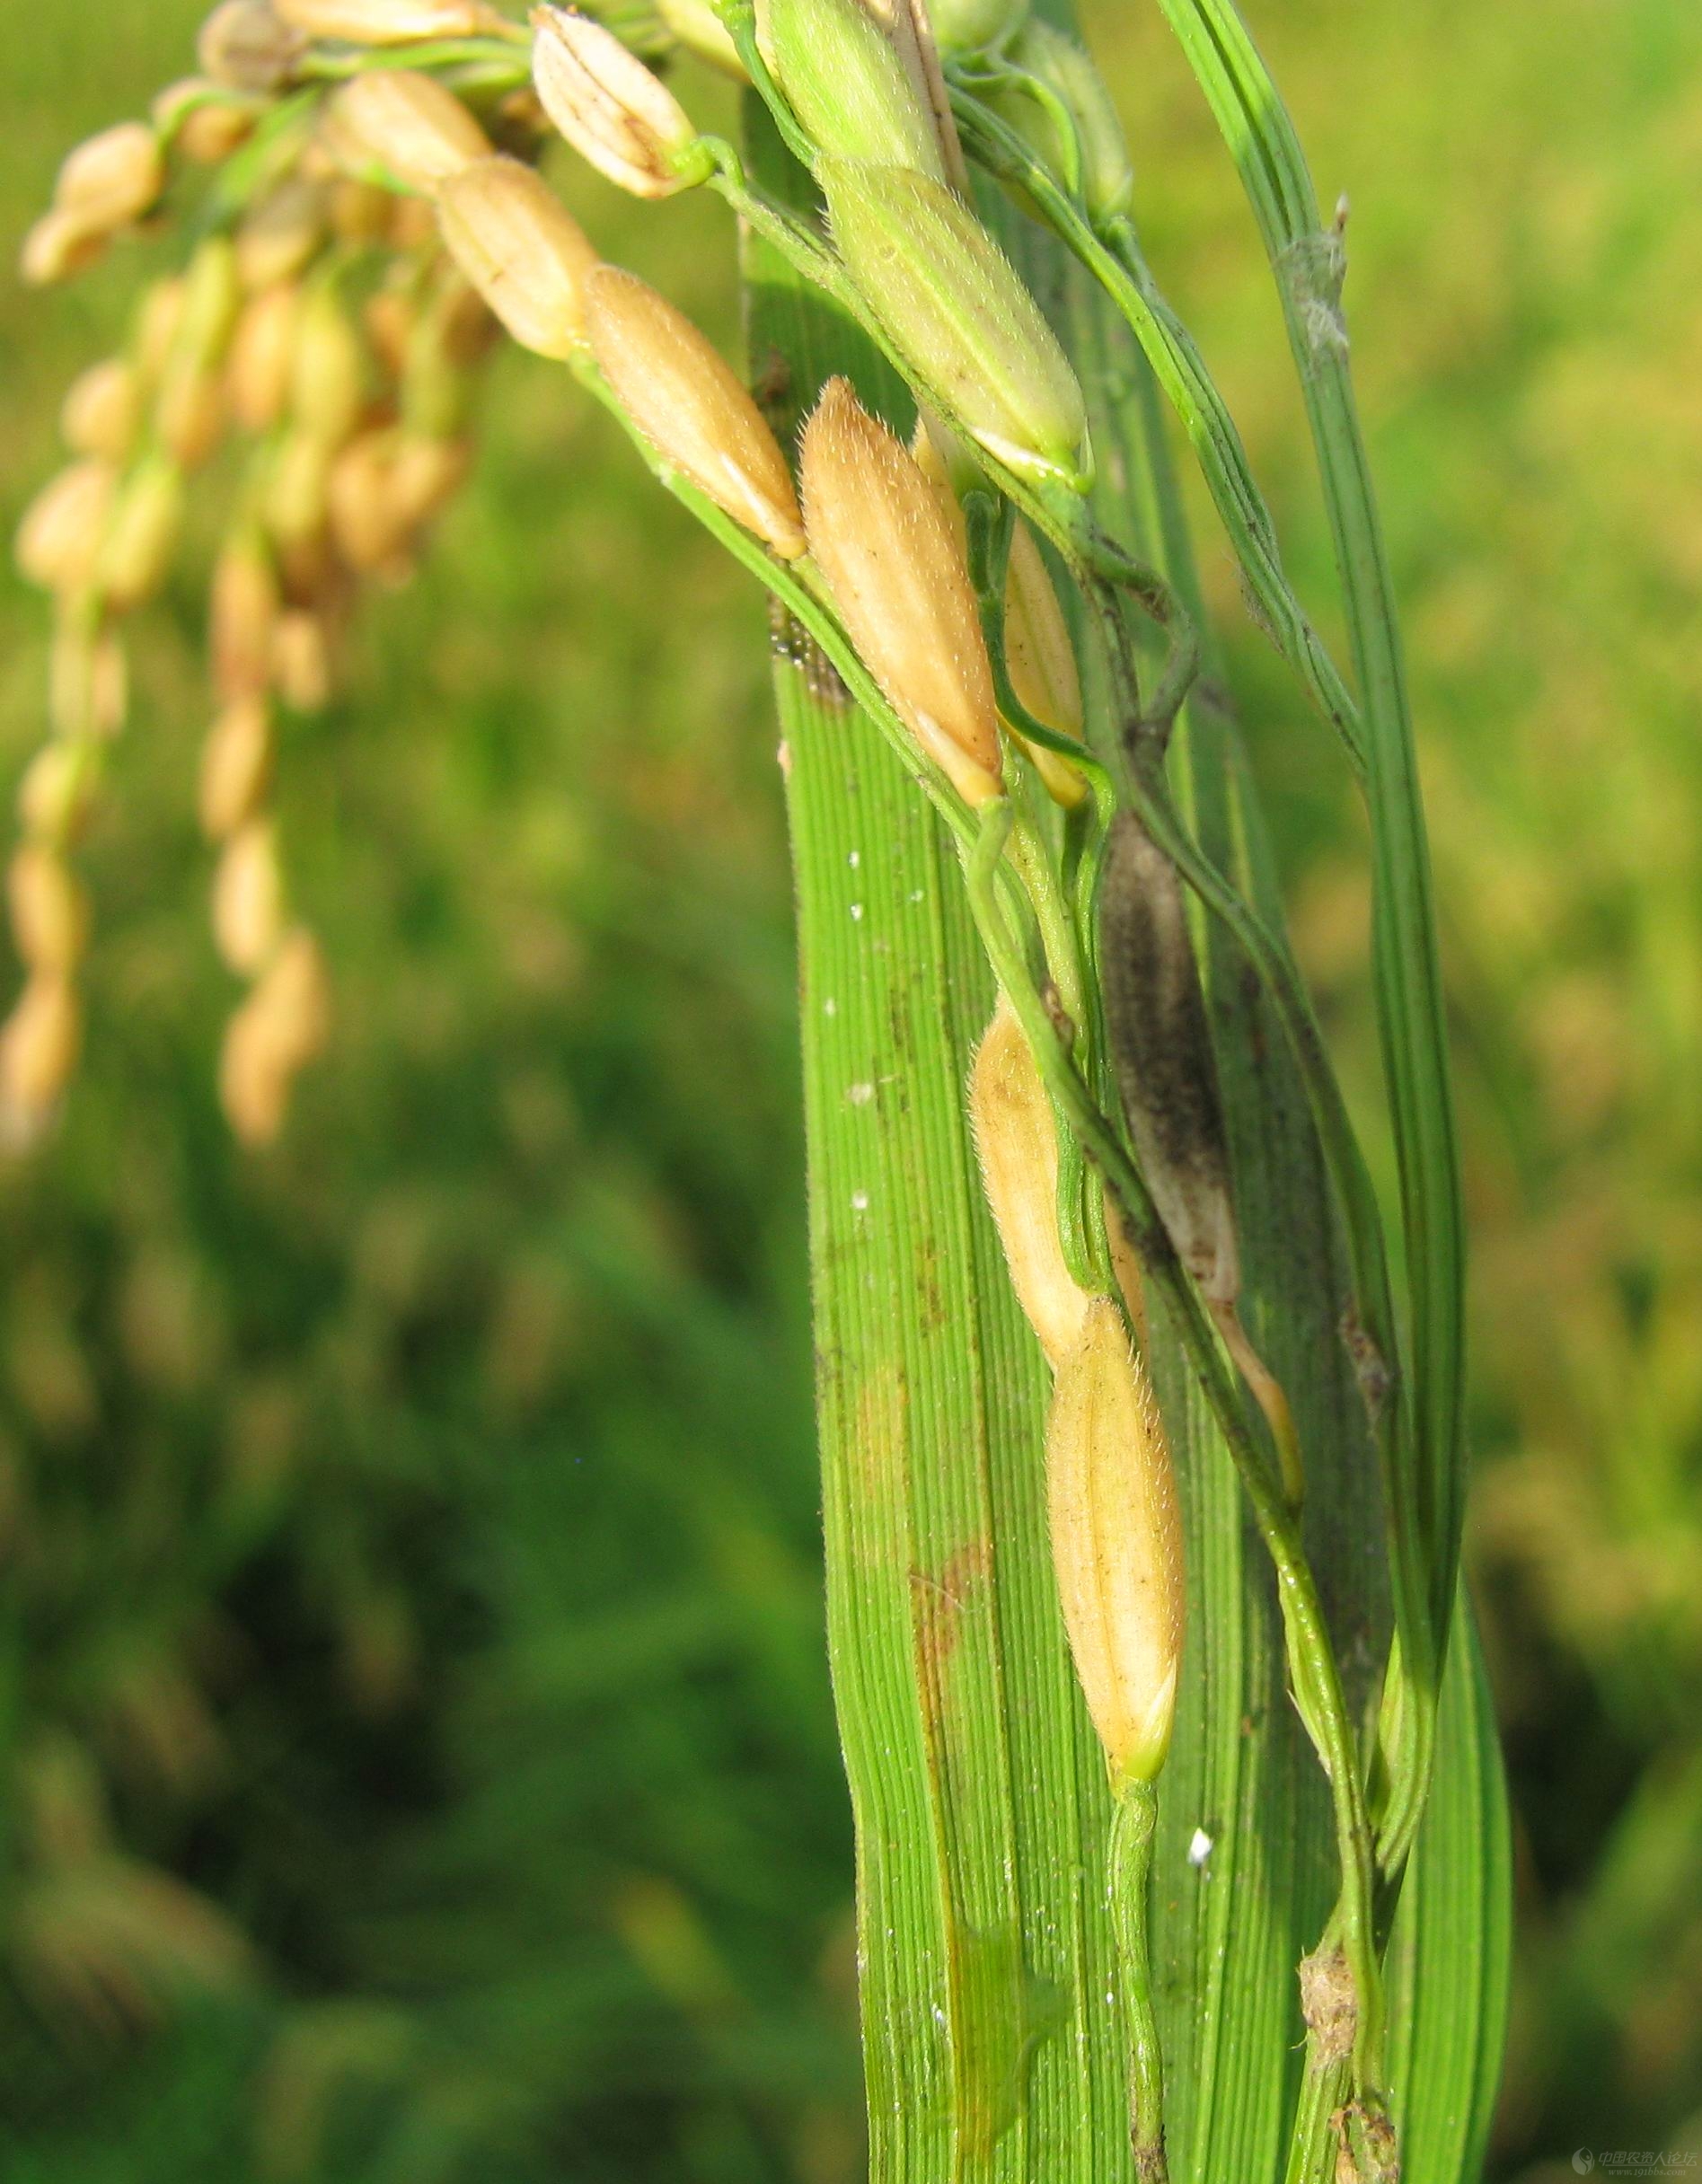 老关高清系列,江西余干收获期的水稻稻曲病原创照片,,请支持农币!